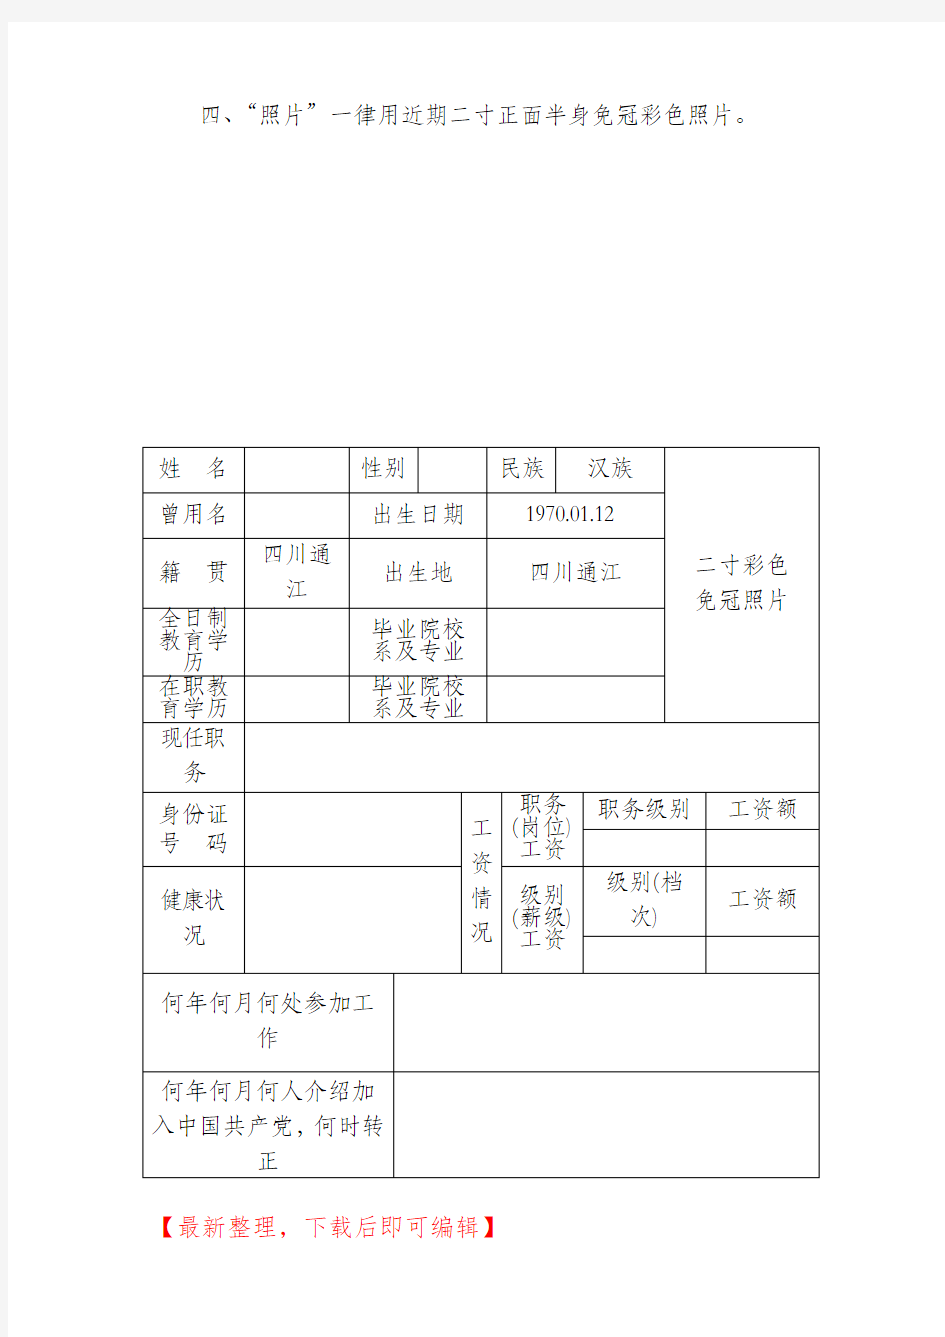 事业单位工作人员个人简历表(完整资料).doc